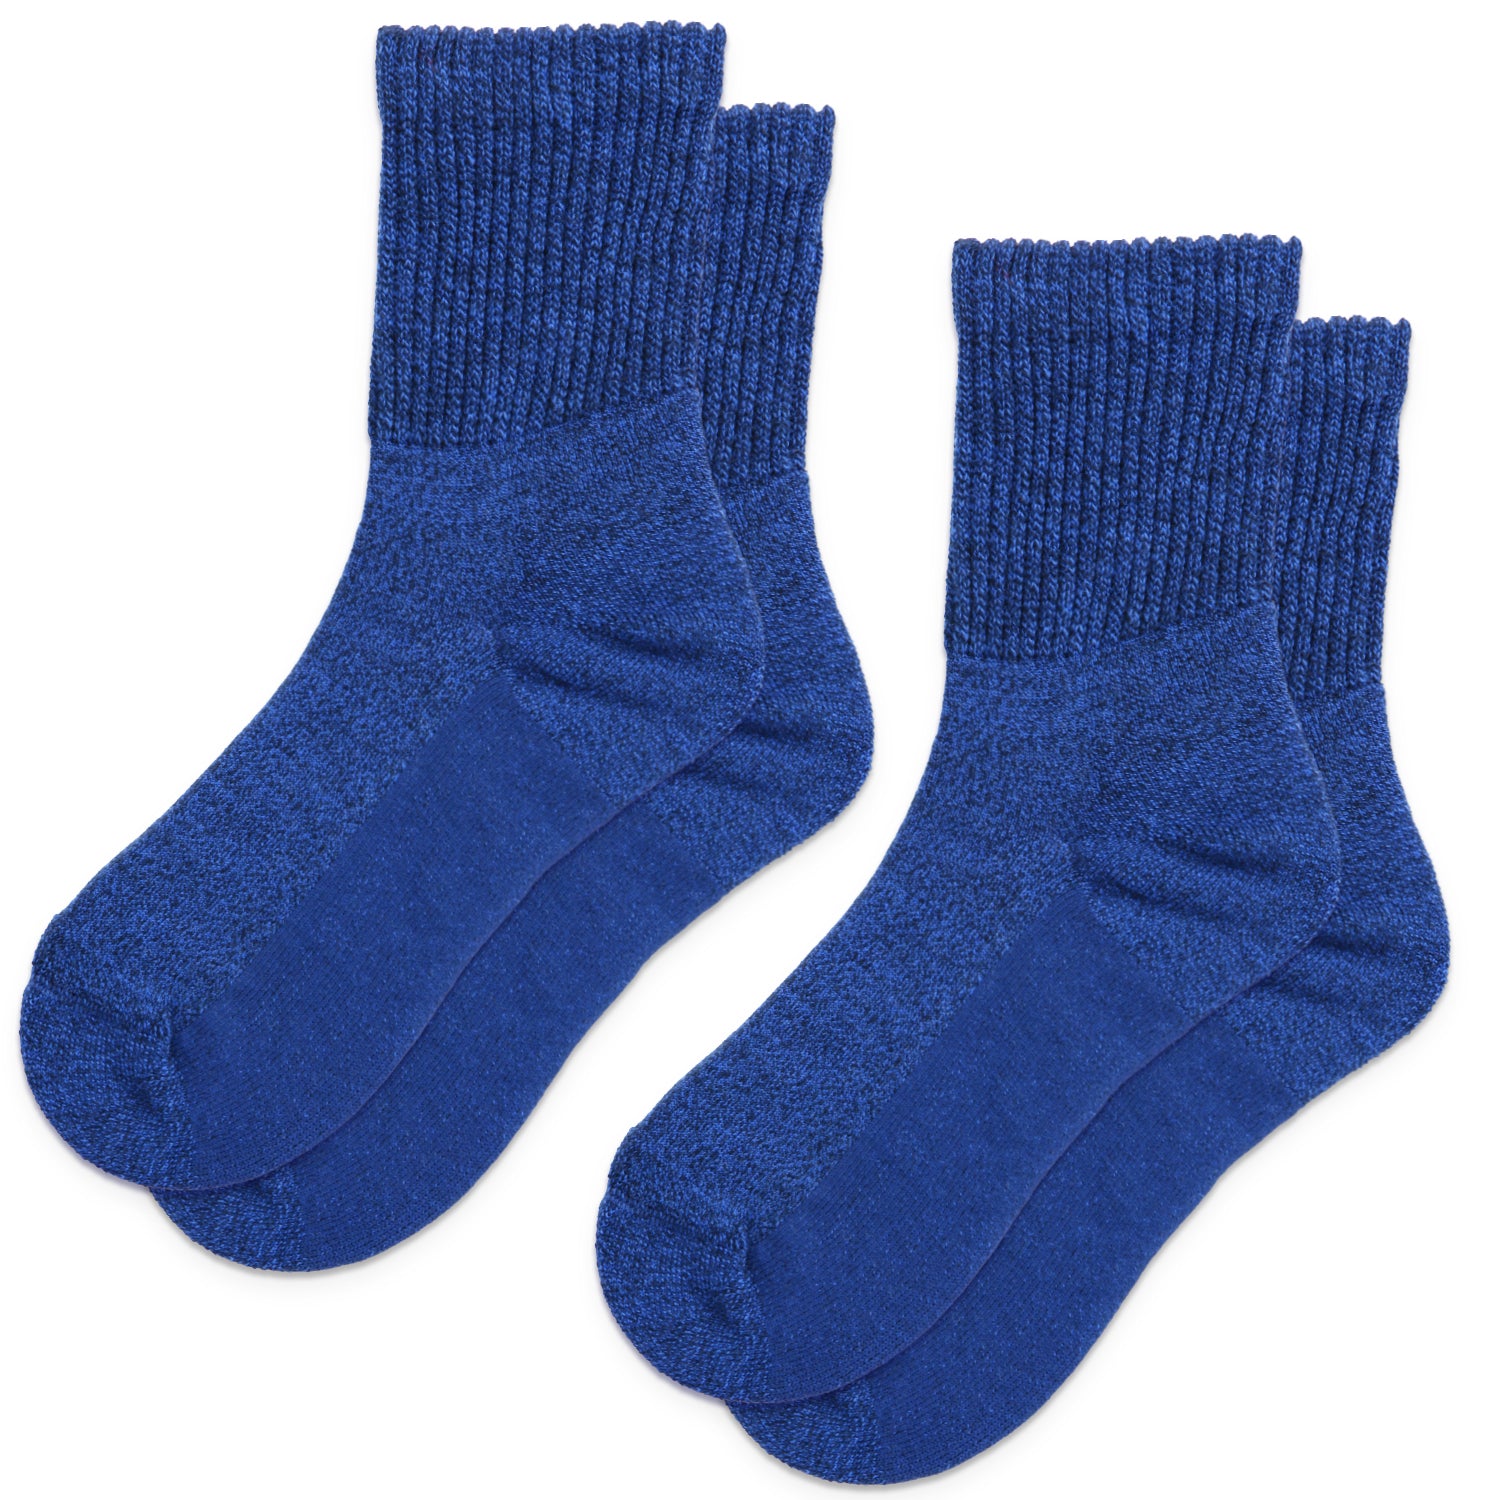 Comfort-Fresh Merino Wool Diabetic Socks With Non-Binding 6Pairs